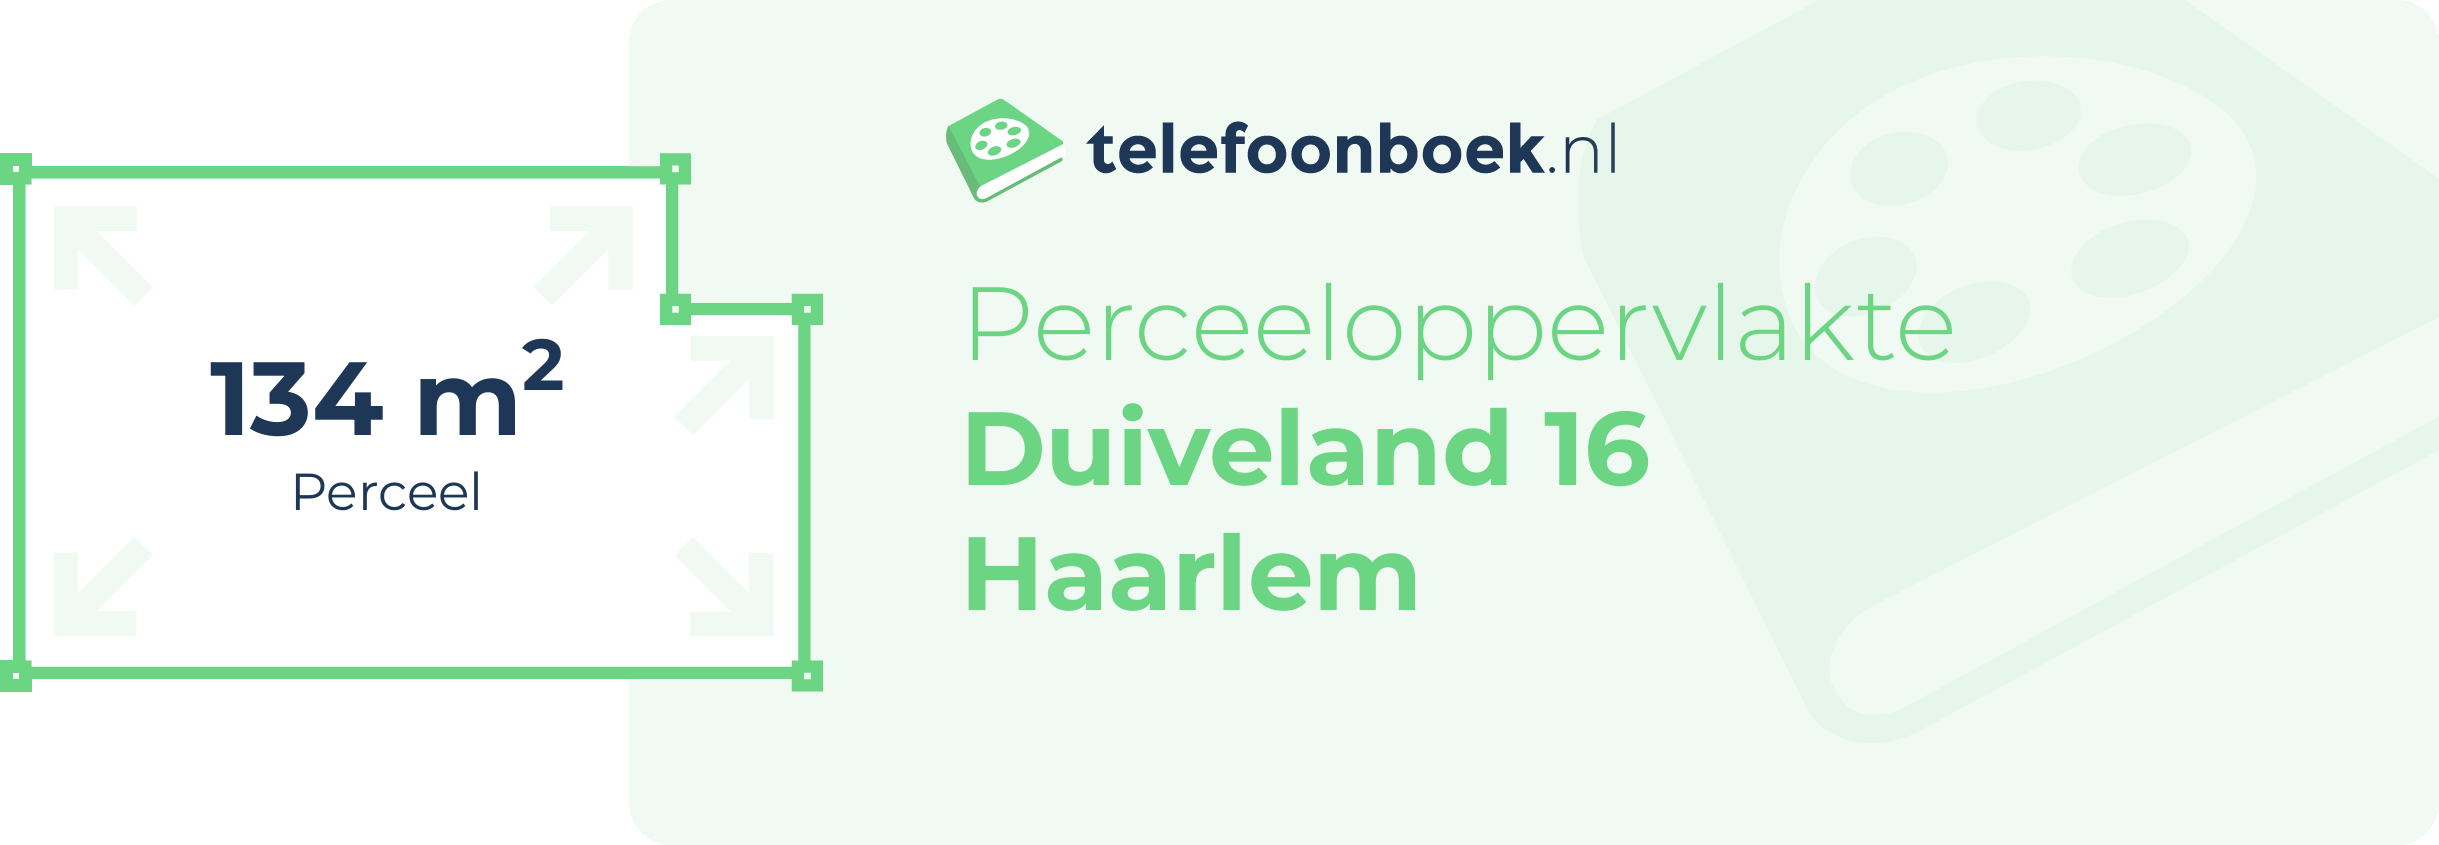 Perceeloppervlakte Duiveland 16 Haarlem